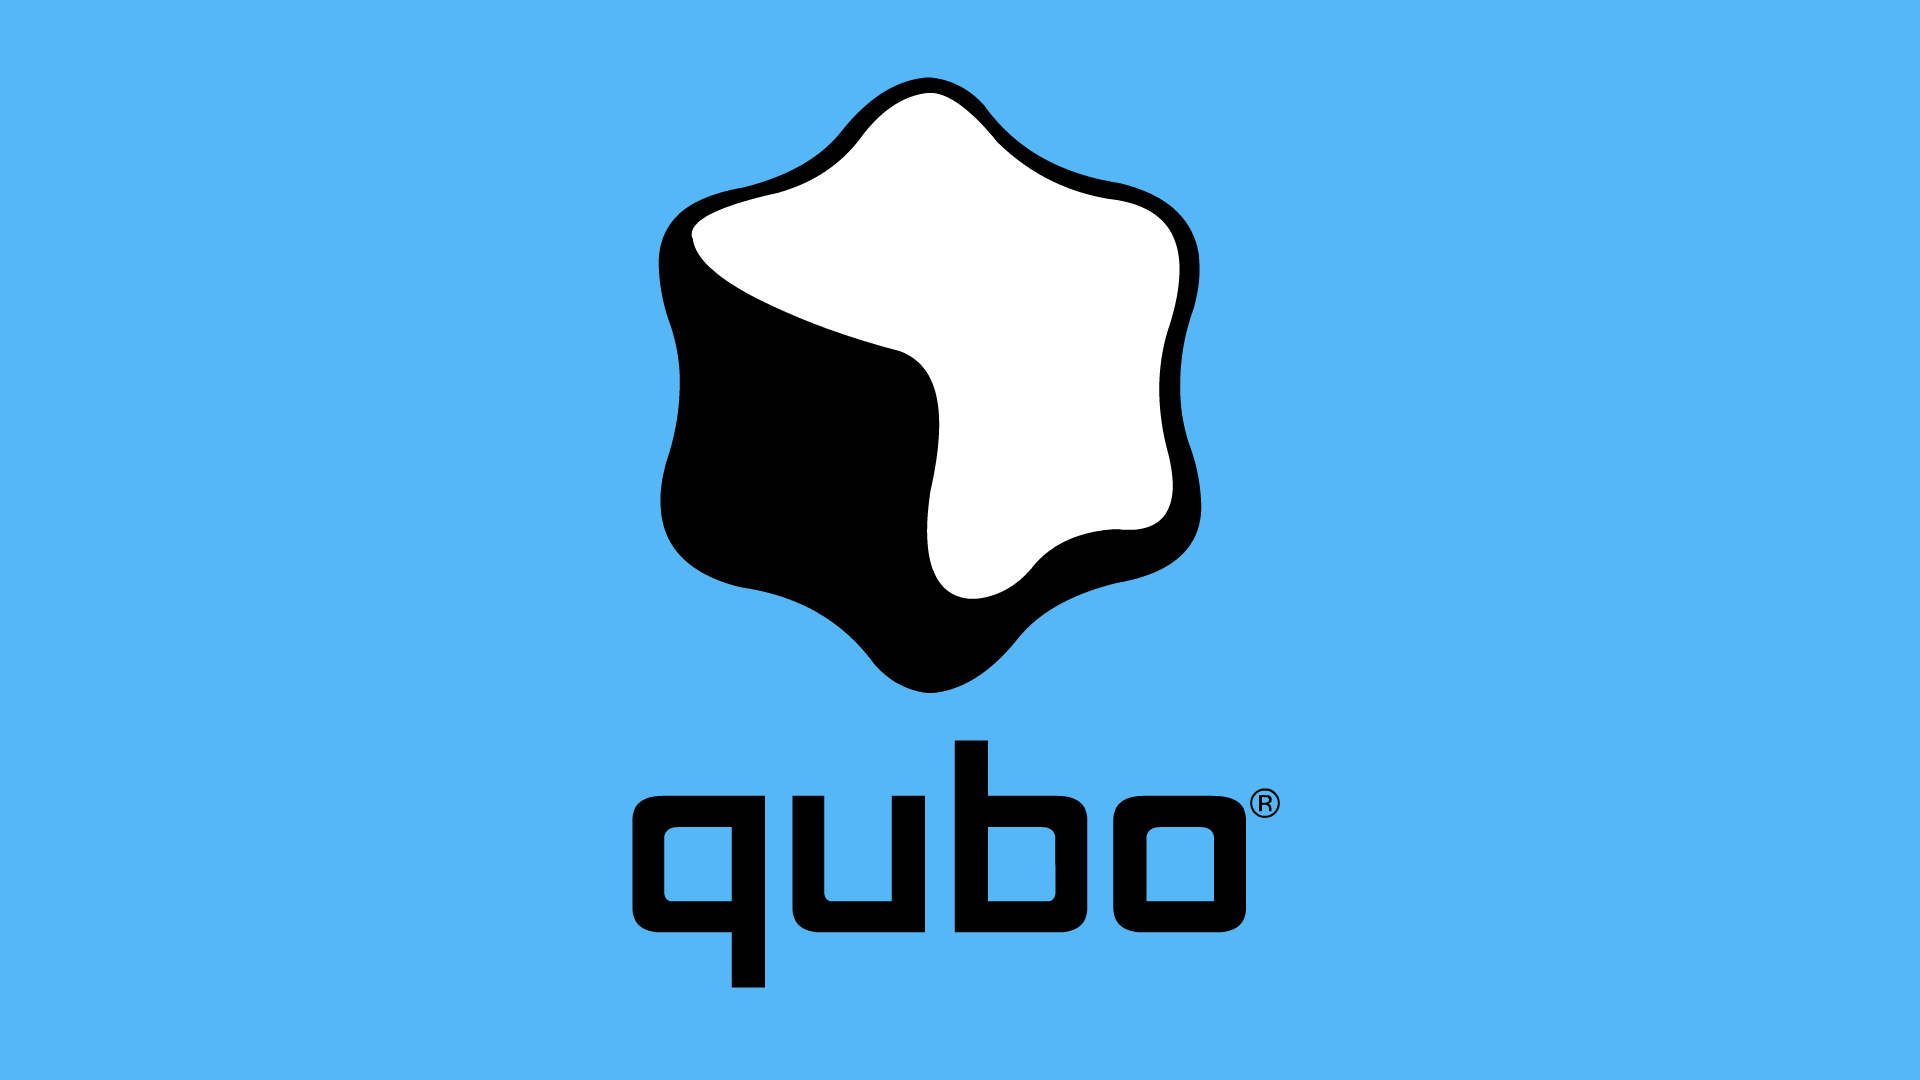 Qubo Logo - Qubo | Logopedia | FANDOM powered by Wikia